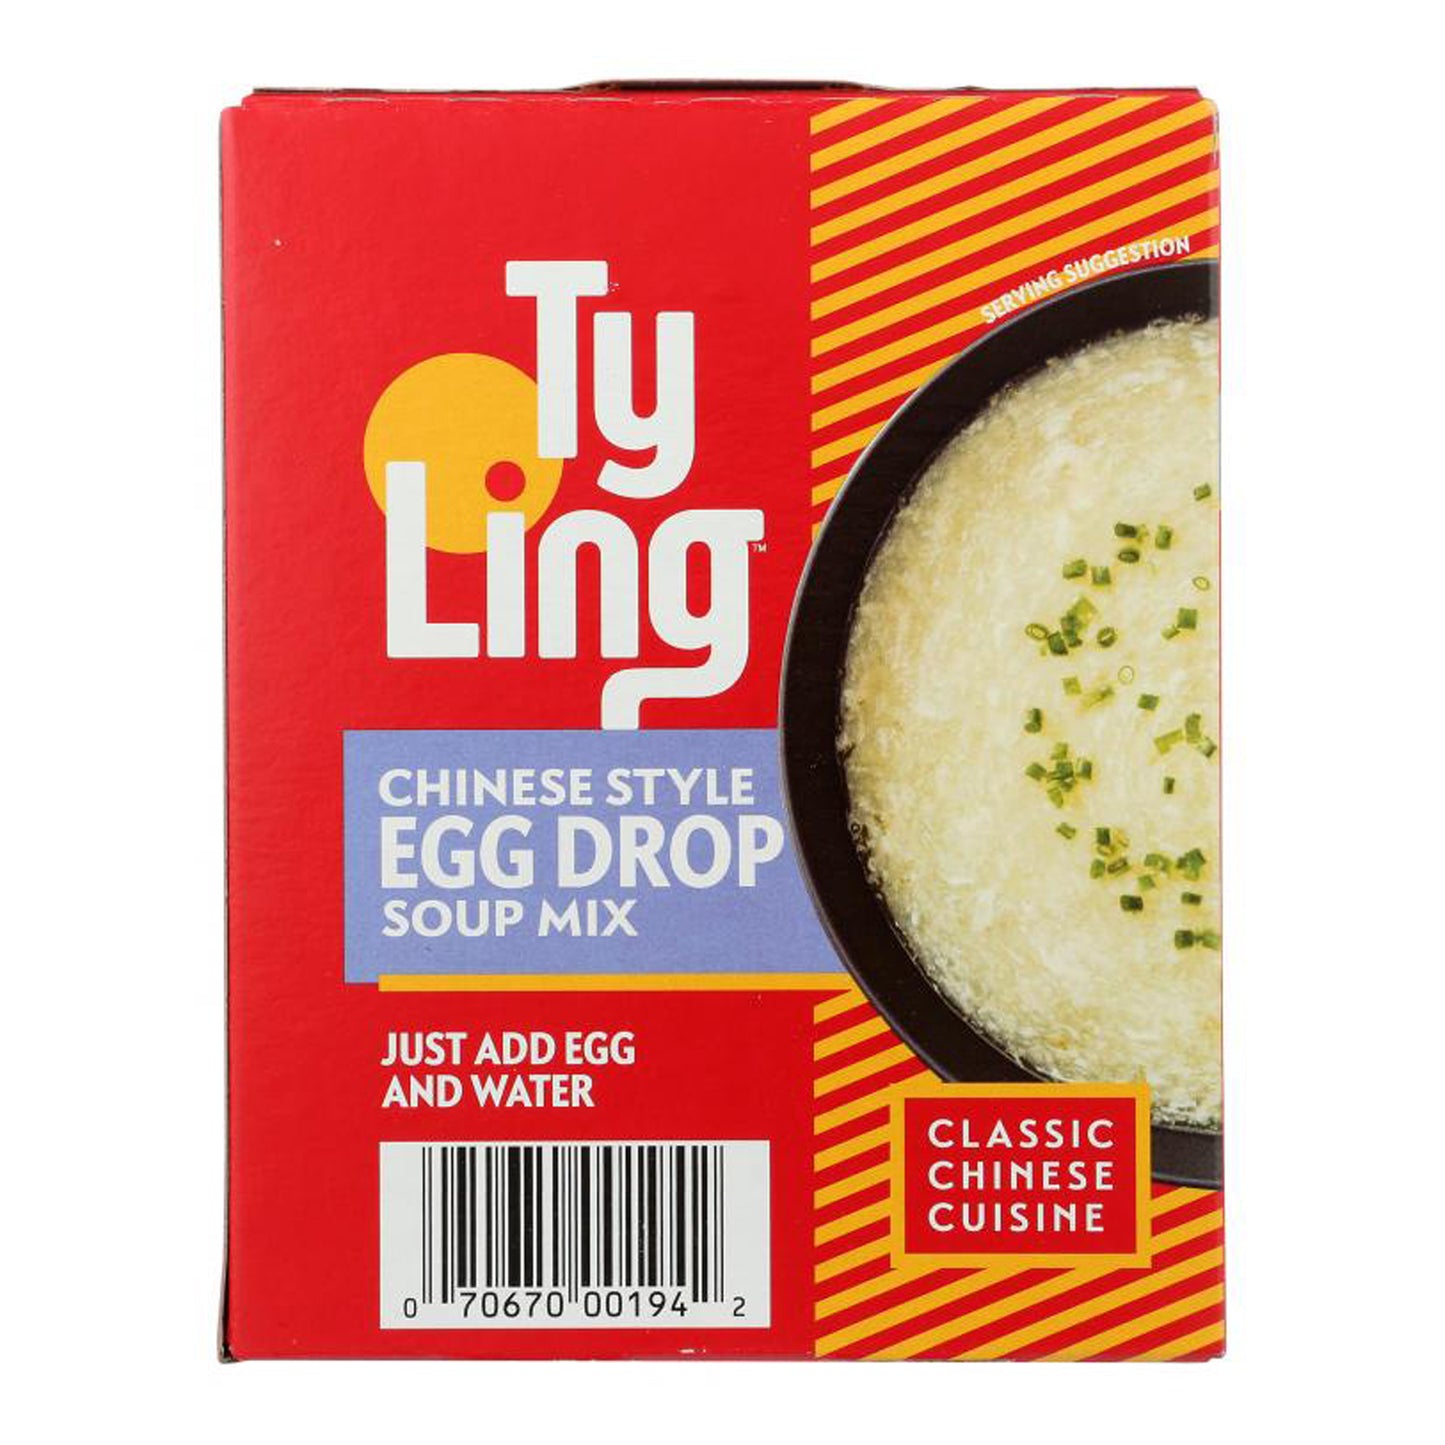 Egg Drop Soup Mix